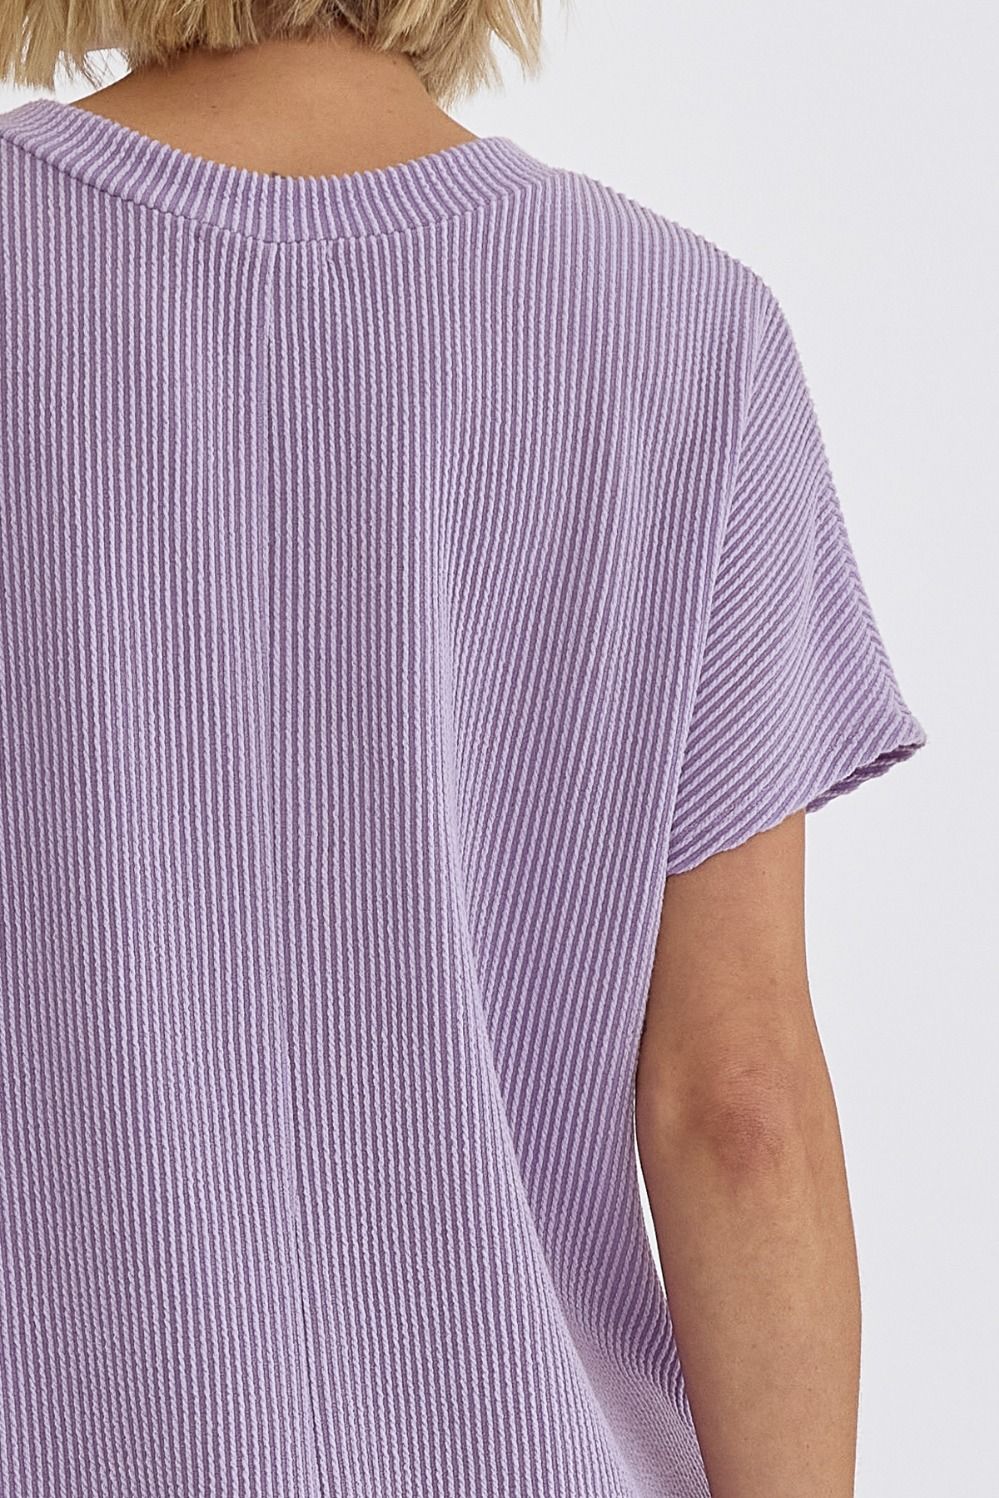 Entro | Lavender T-Shirt Dress | Sweetest Stitch Richmond Boutique